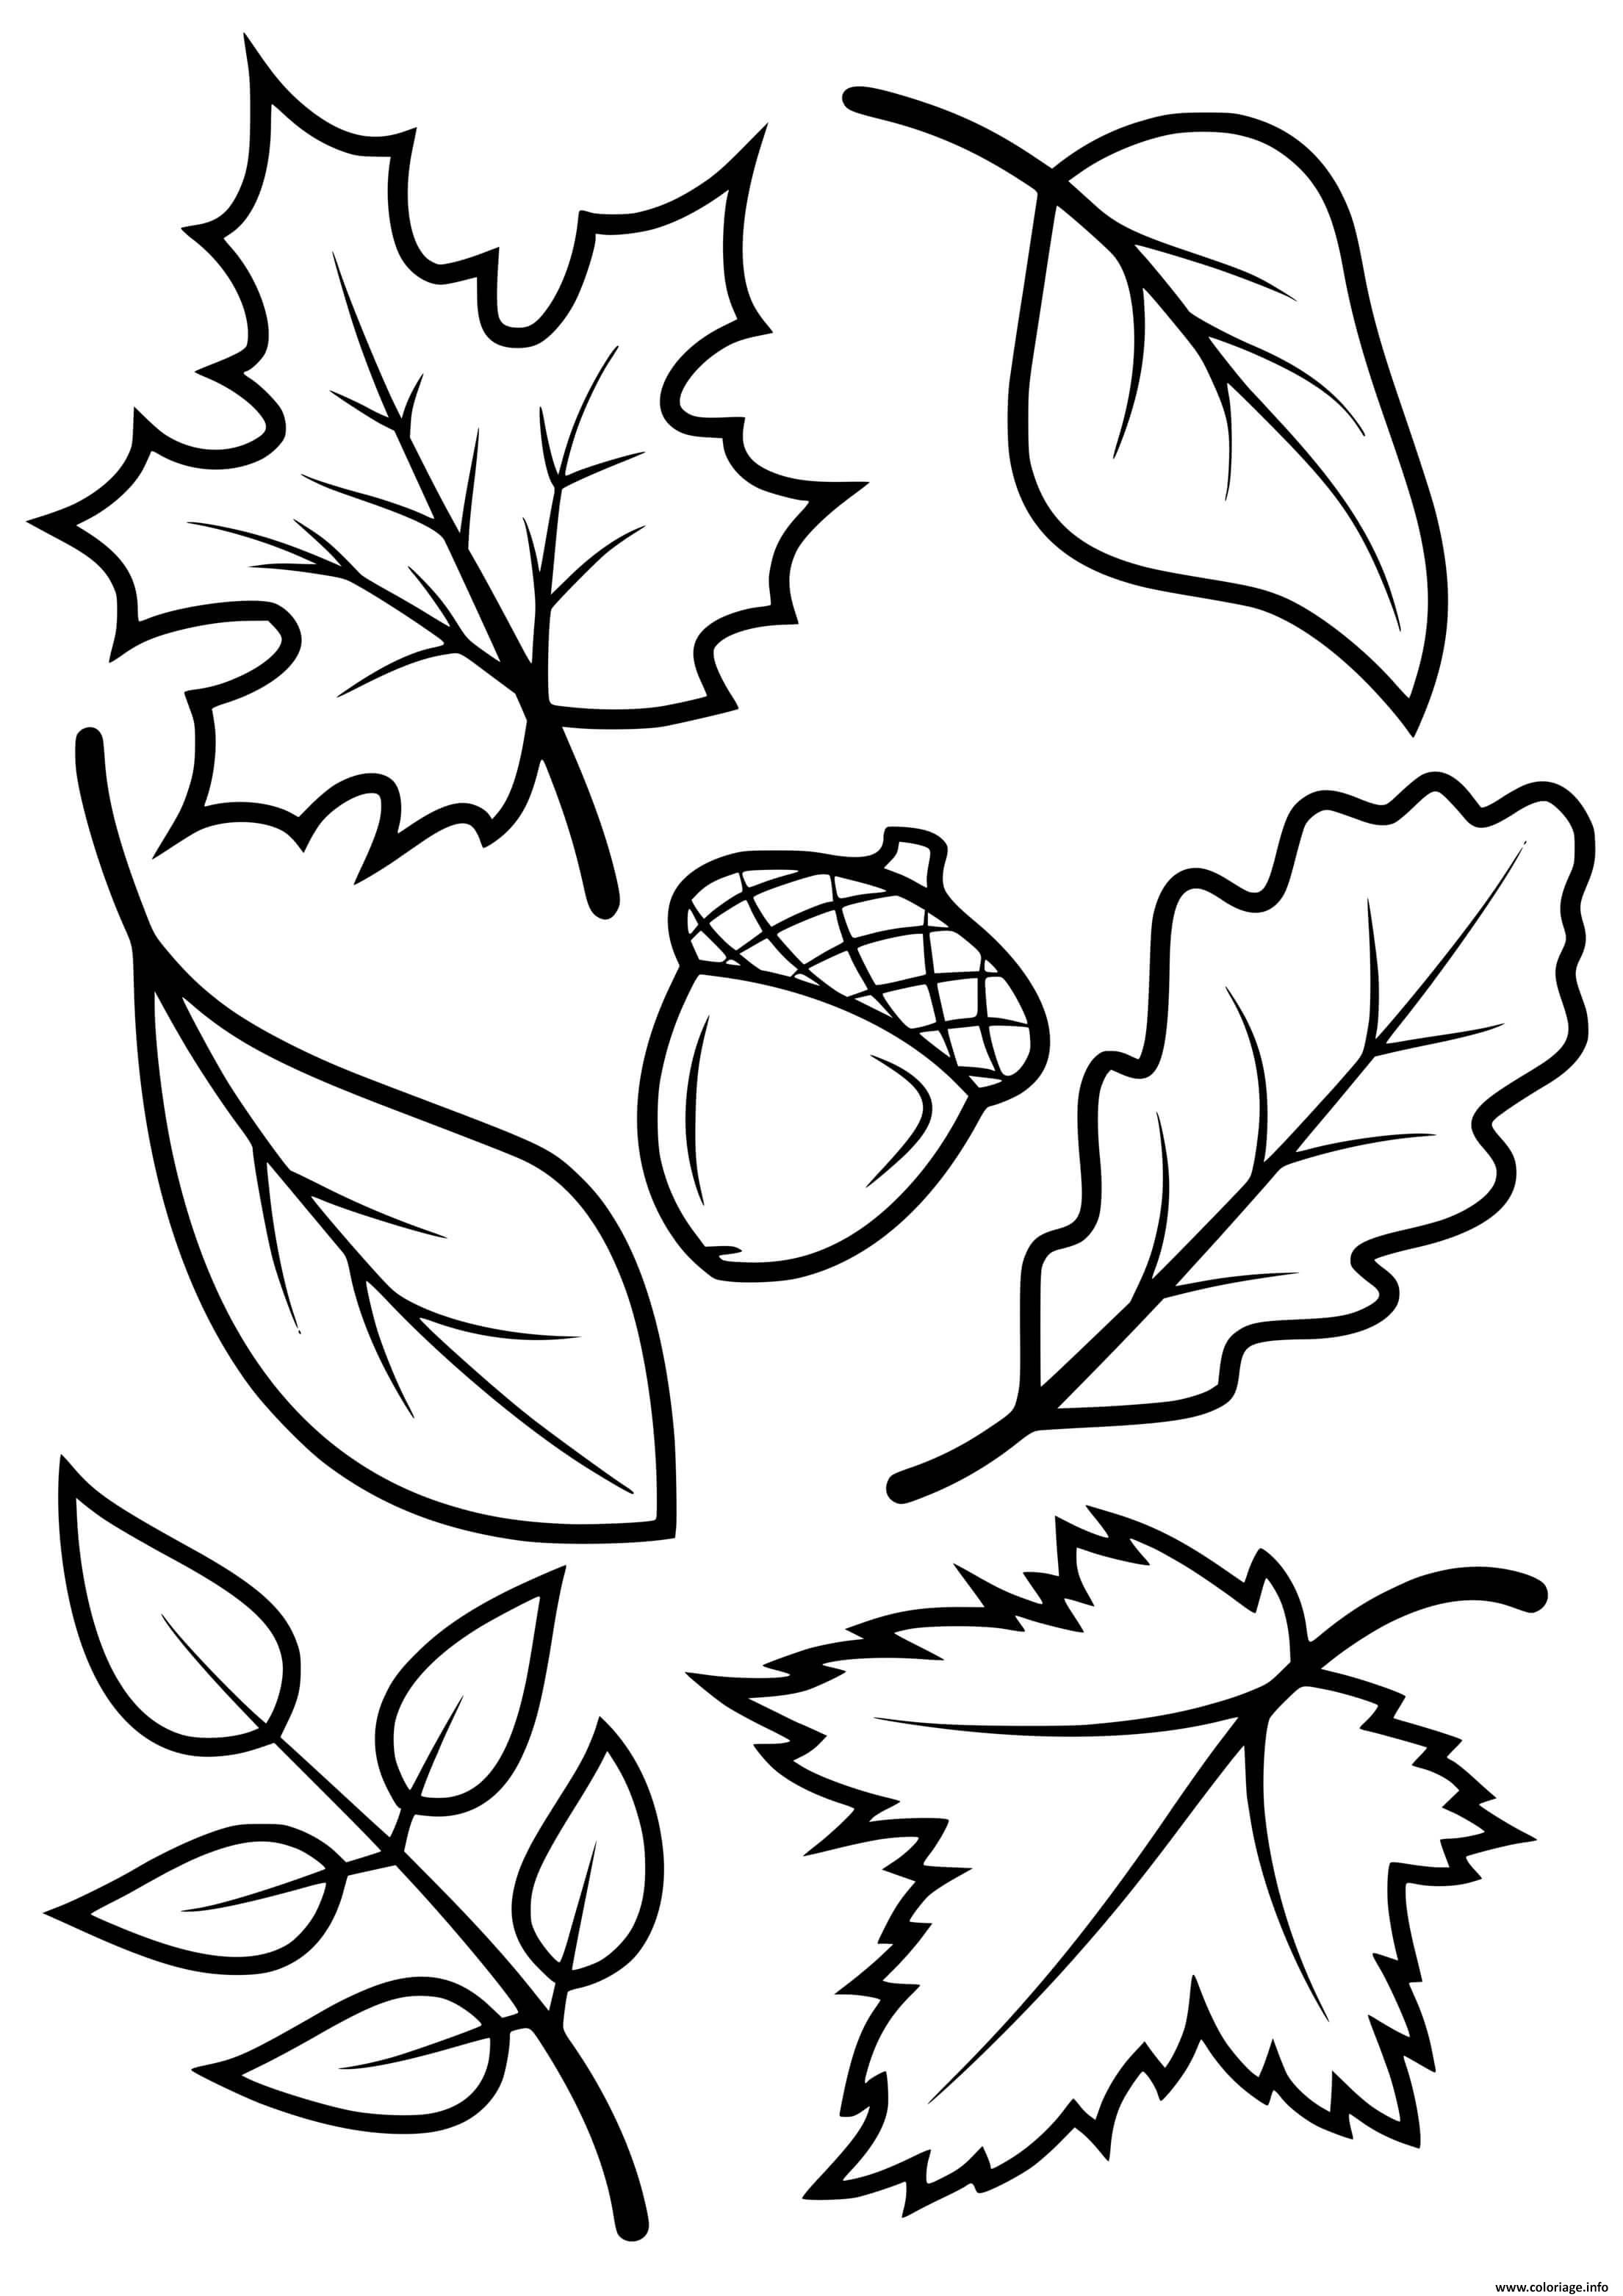 Dessin Automne Facile Coloriage feuilles automne arbres erable hetre chene - JeColorie.com